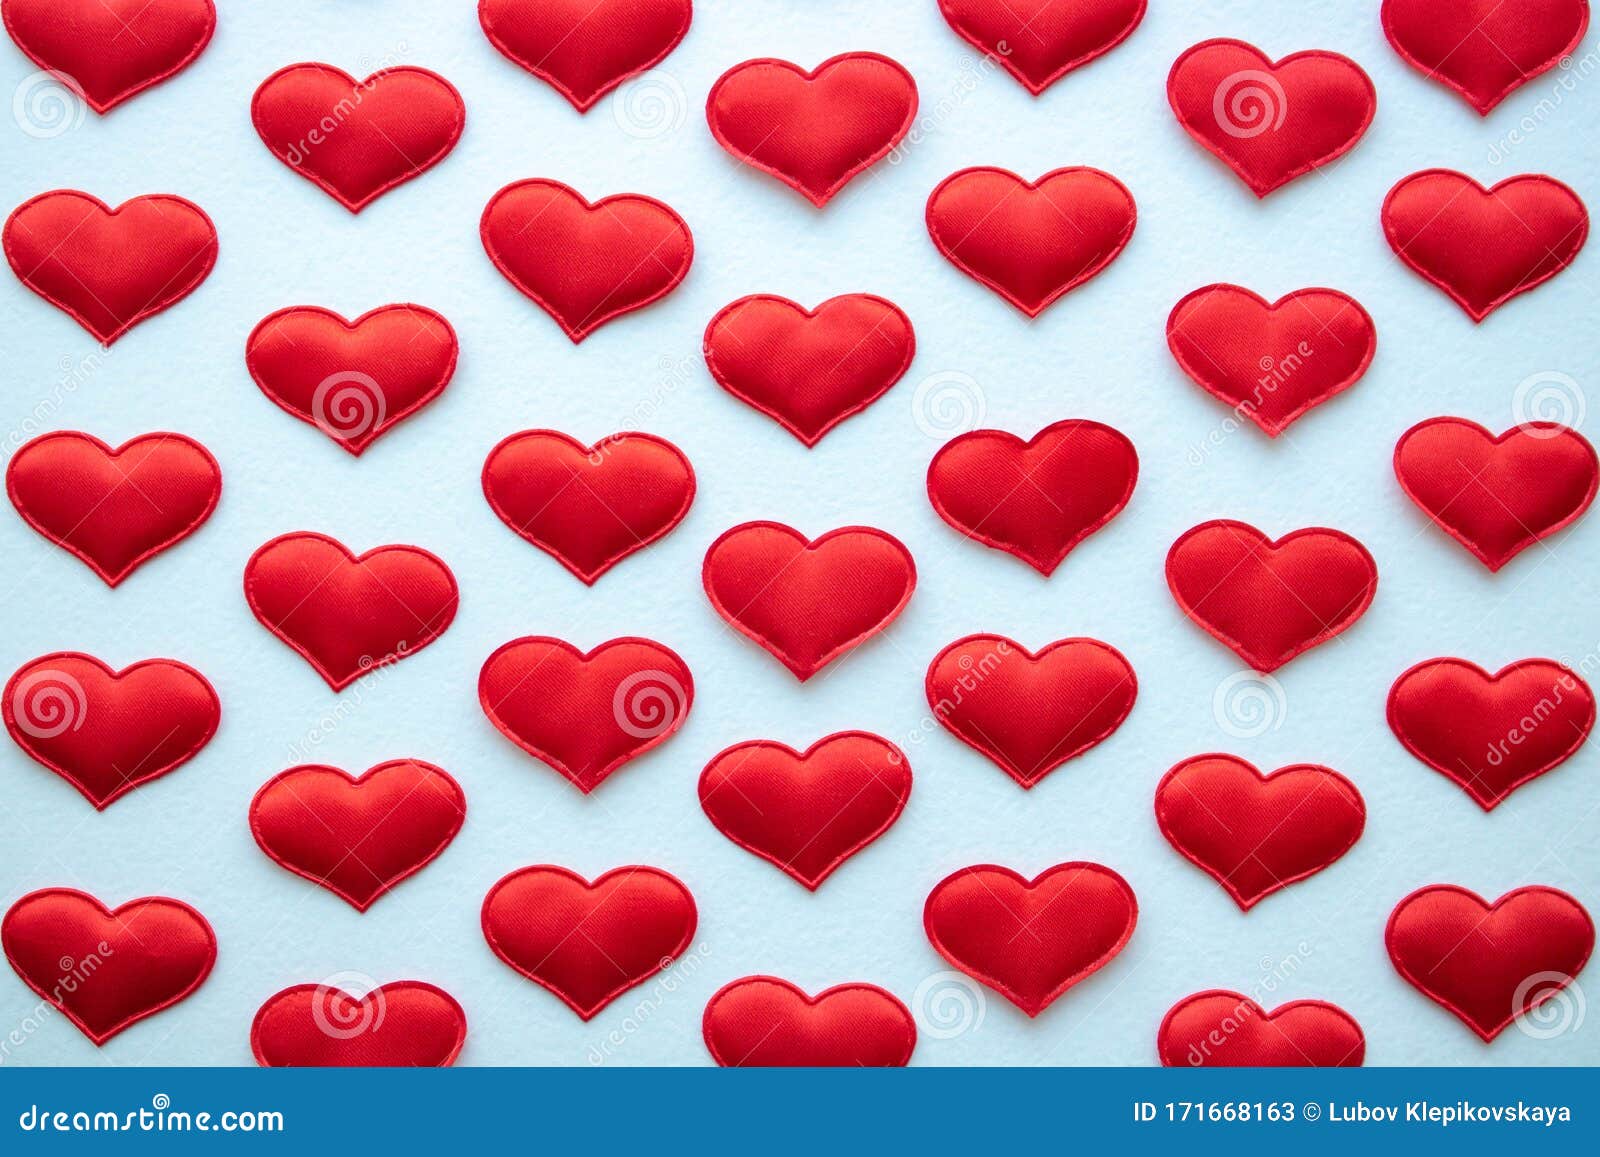 2月14日情人节由小红心组成的白色背景中的红心库存图片 图片包括有棚车 华伦泰 模式 设计